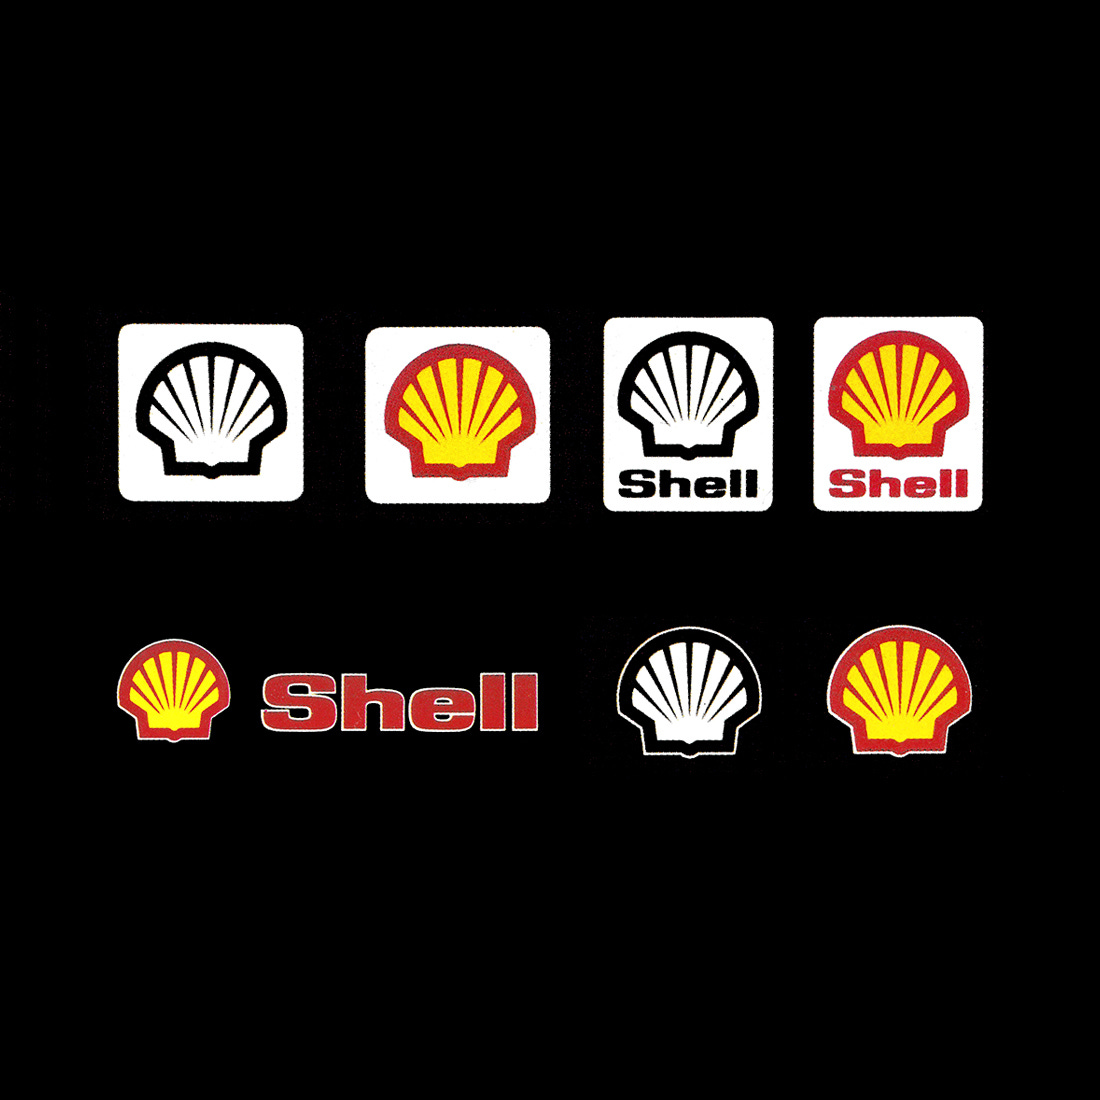 Raymond Loewy's 1971 logo for oil giant Shell